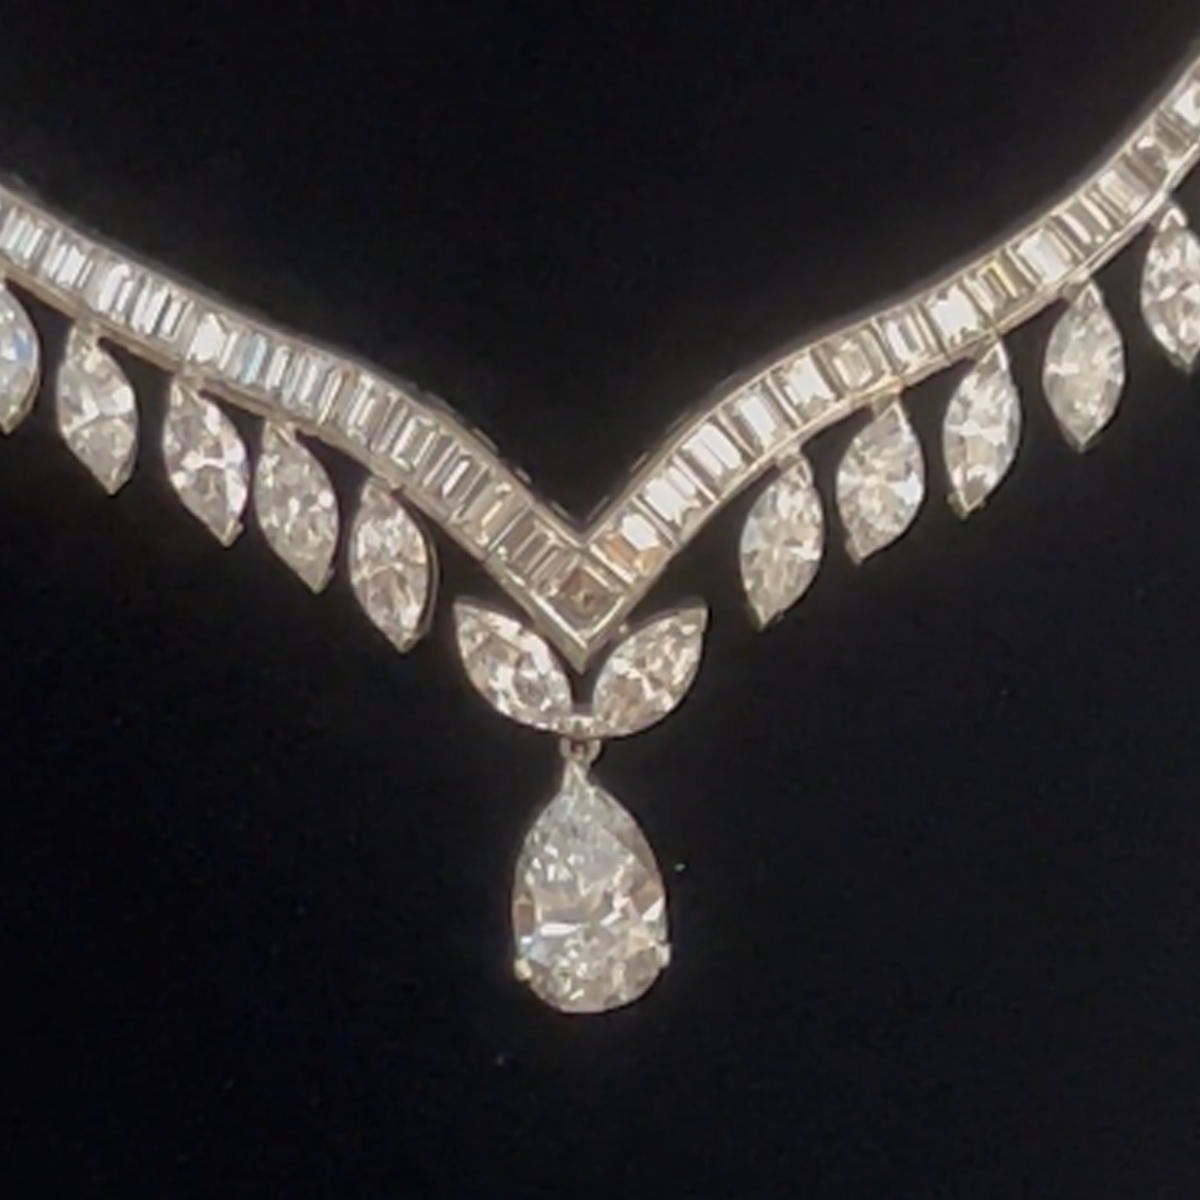 1960s Platinum Diamond Necklace close-up details